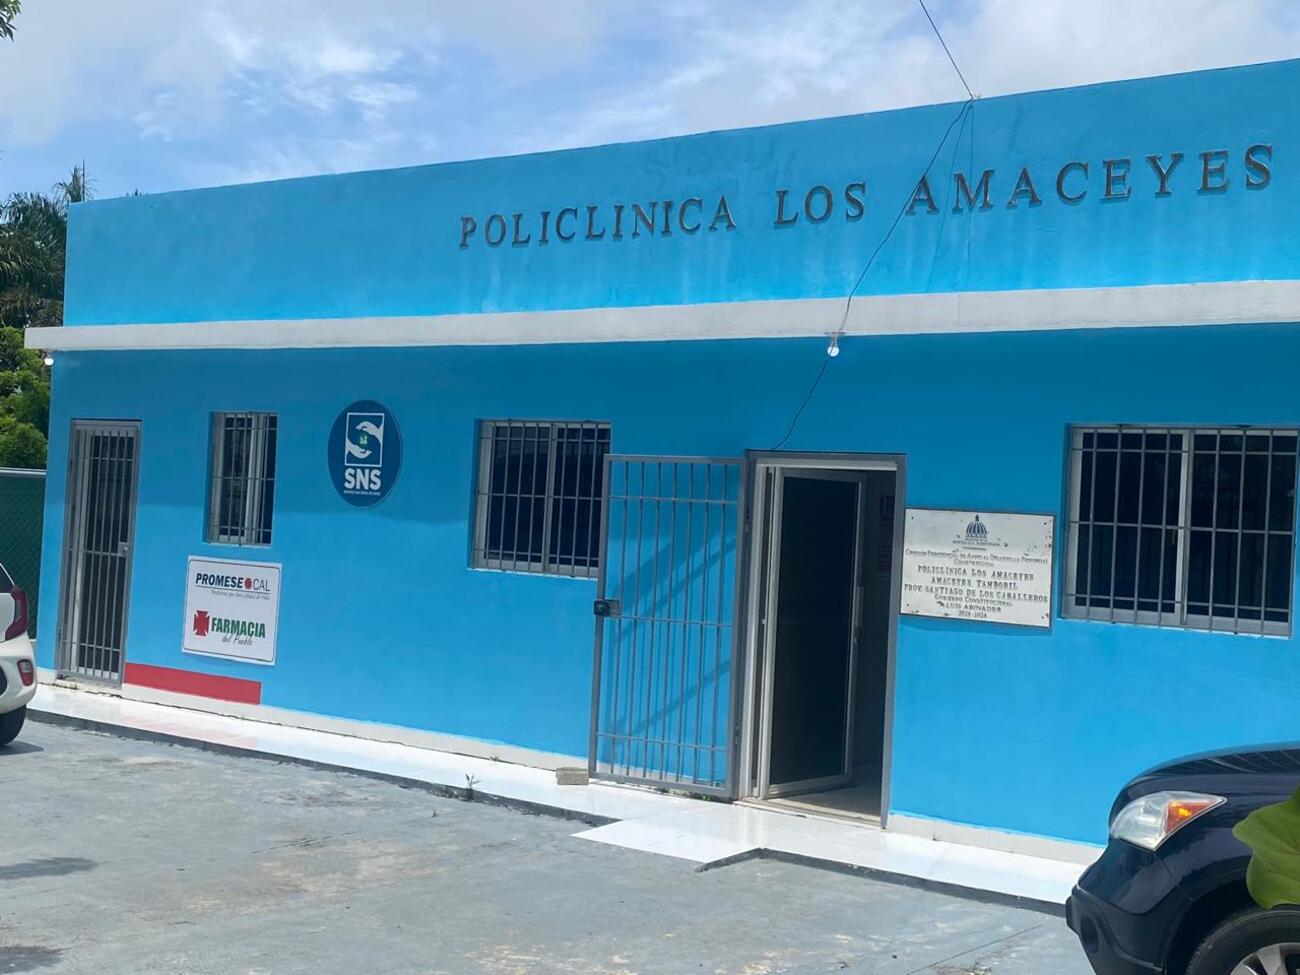 Promese/CAL continúa ampliando red de Farmacias del Pueblo; abren dos nuevos establecimientos en Villa Mella y Tamboril